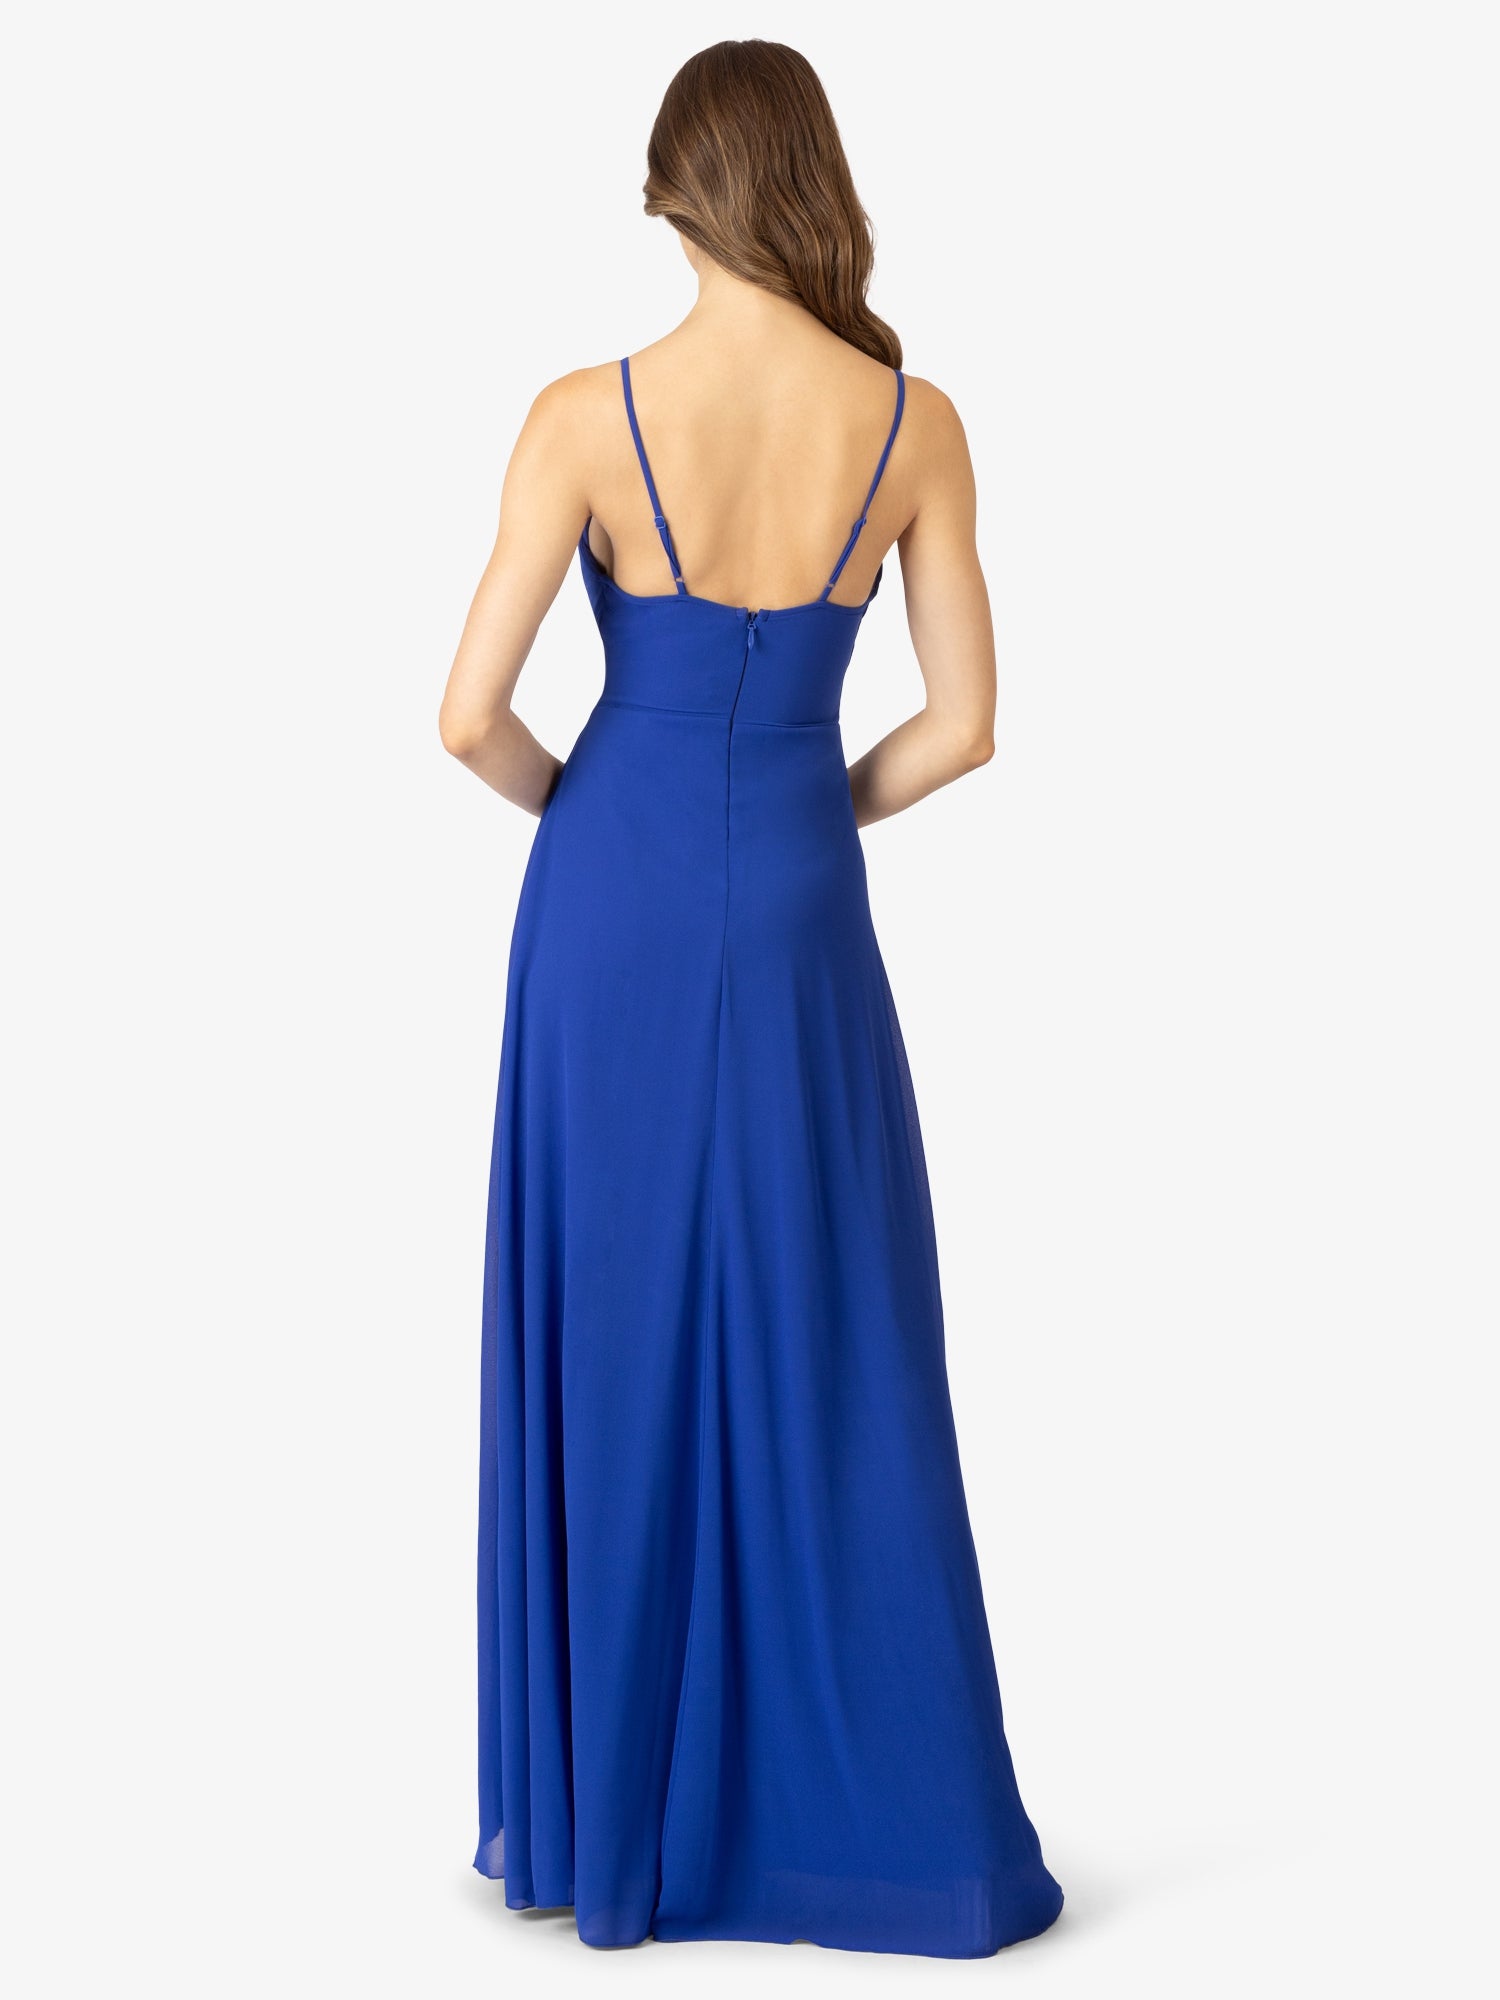 APART Abendkleider mit Herzausschnitt vorne und Rückenausschnitt hinten | royalblau